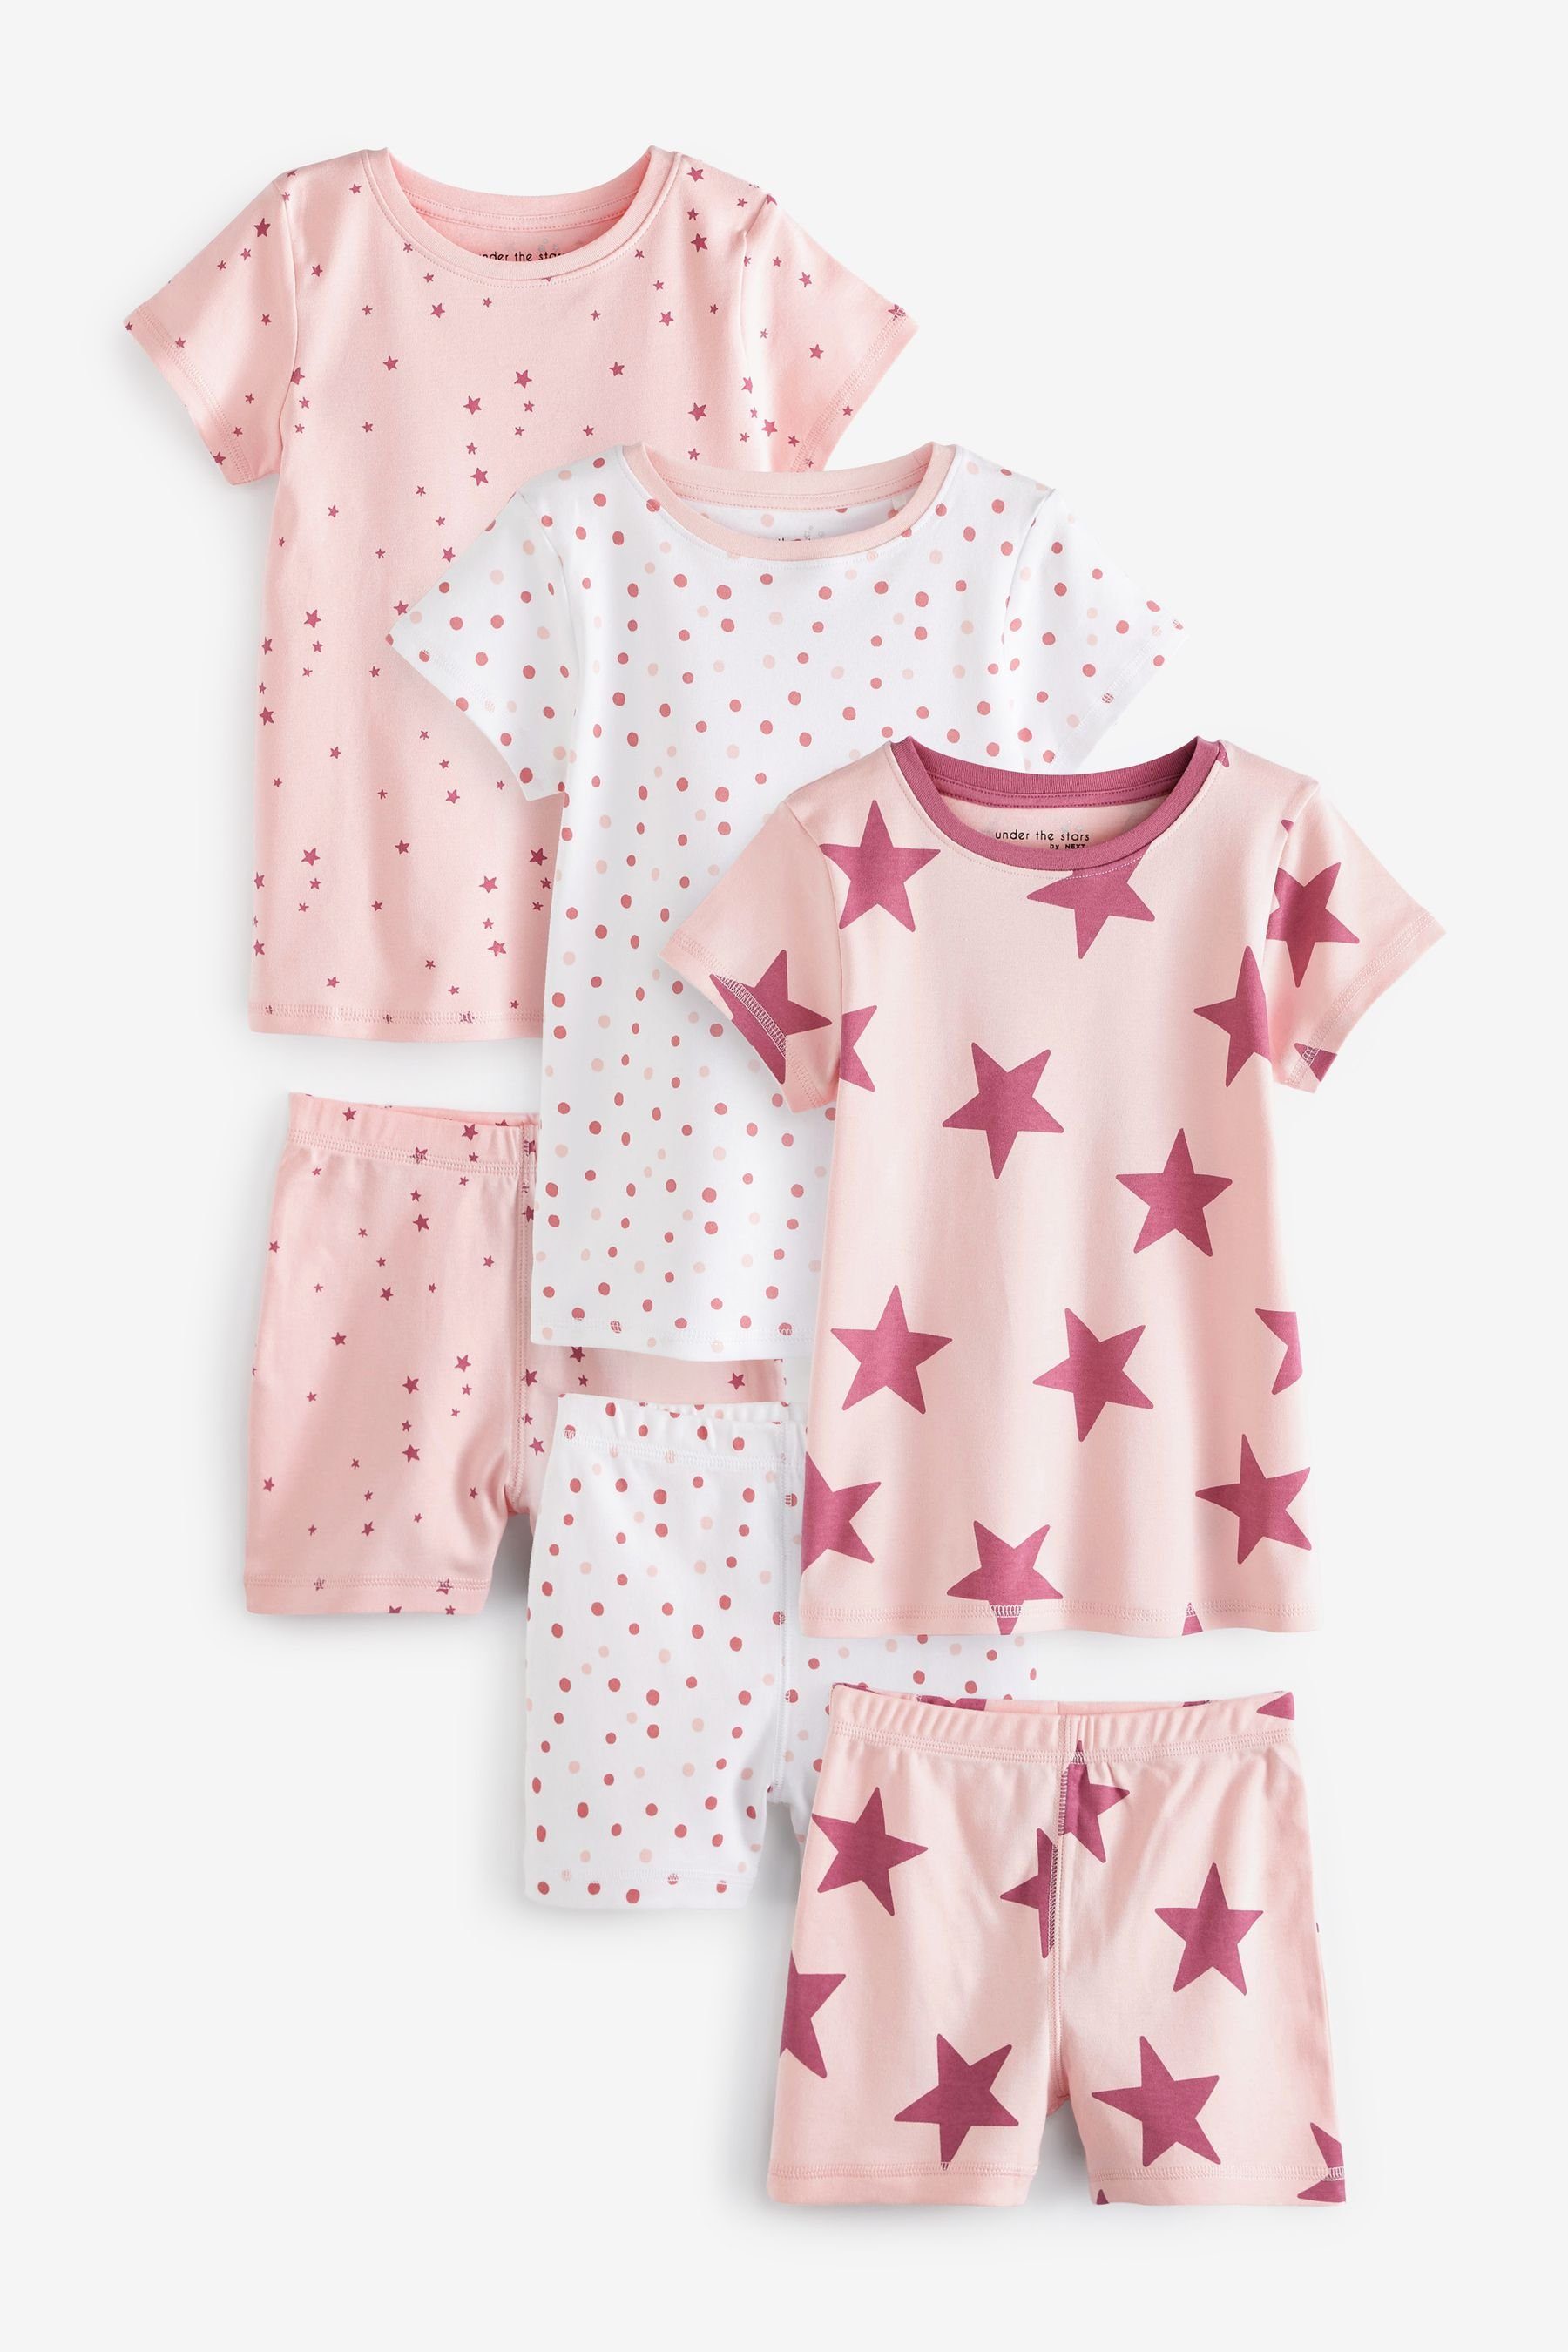 Next Pyjama tlg) 3er-Pack (6 Pink Schlafanzüge, Kurze Star